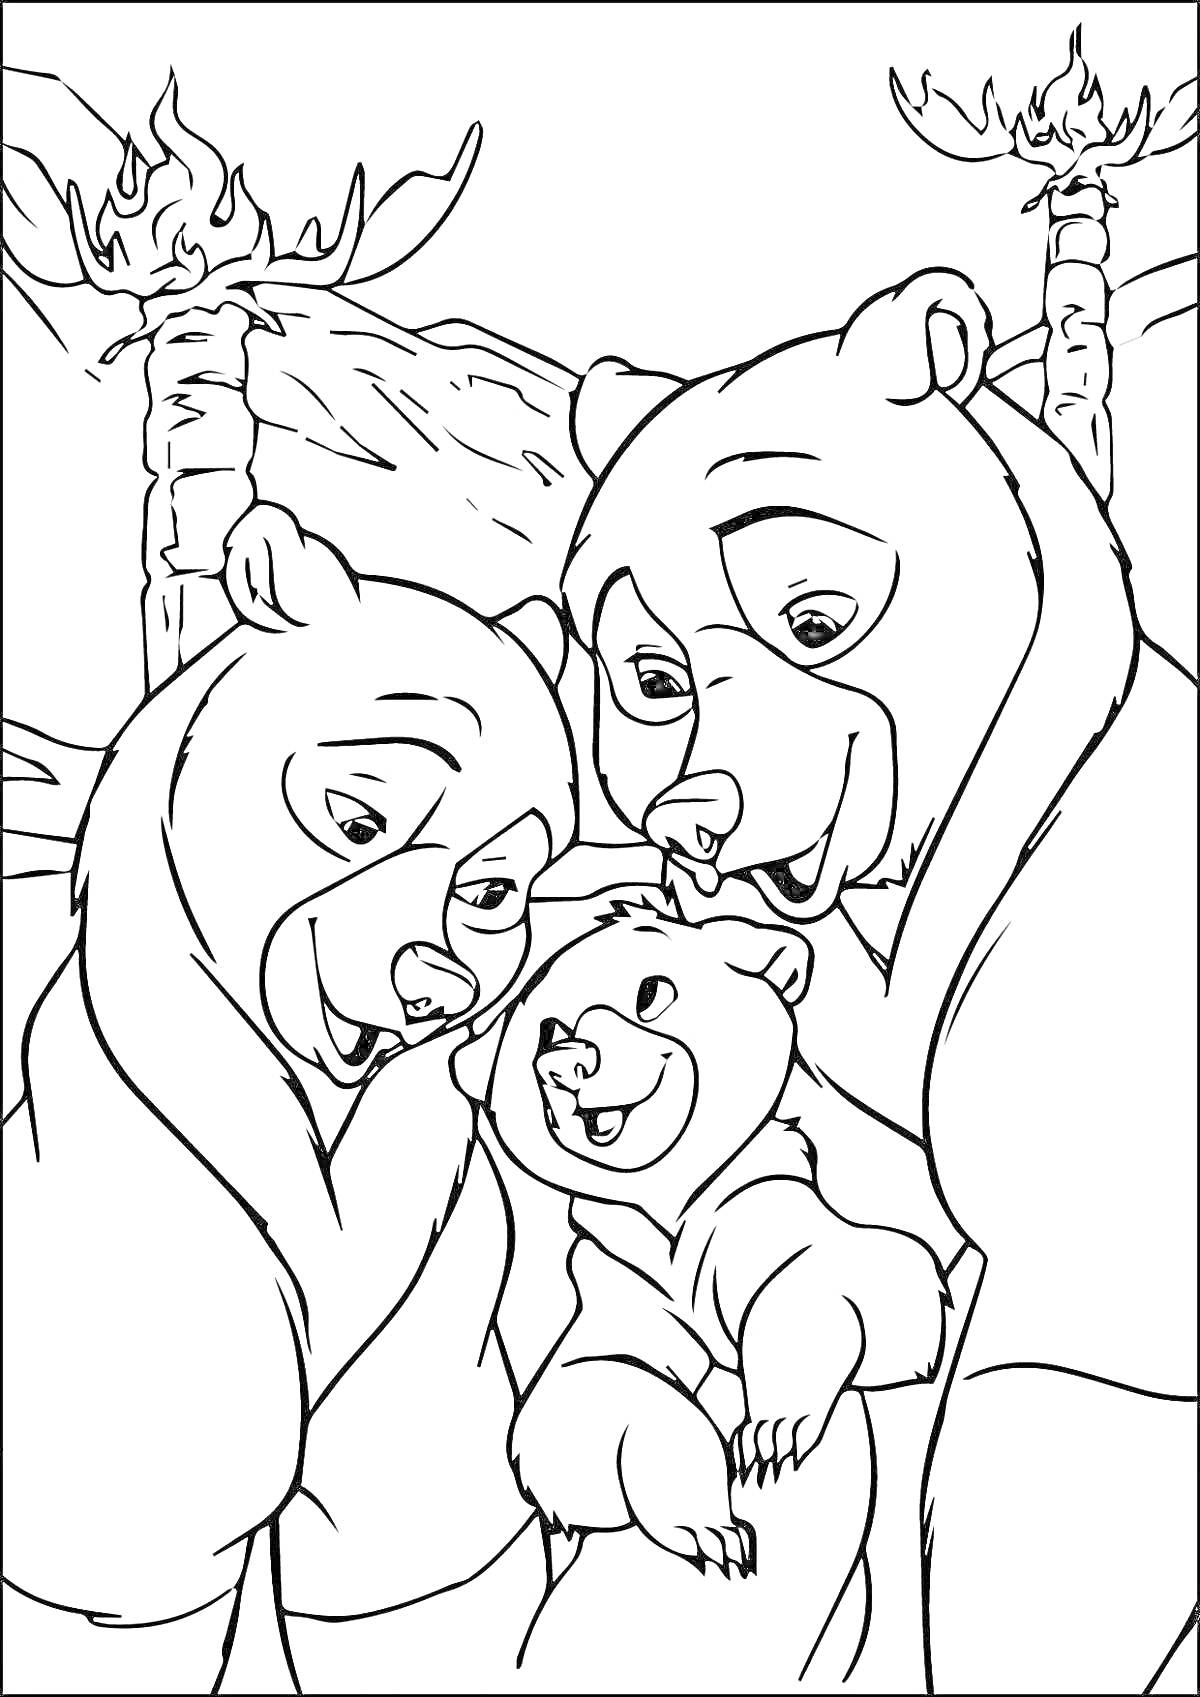 Раскраска Семья медведей, состоящая из двух больших медведей и одного маленького медвежонка, на фоне деревьев и гор